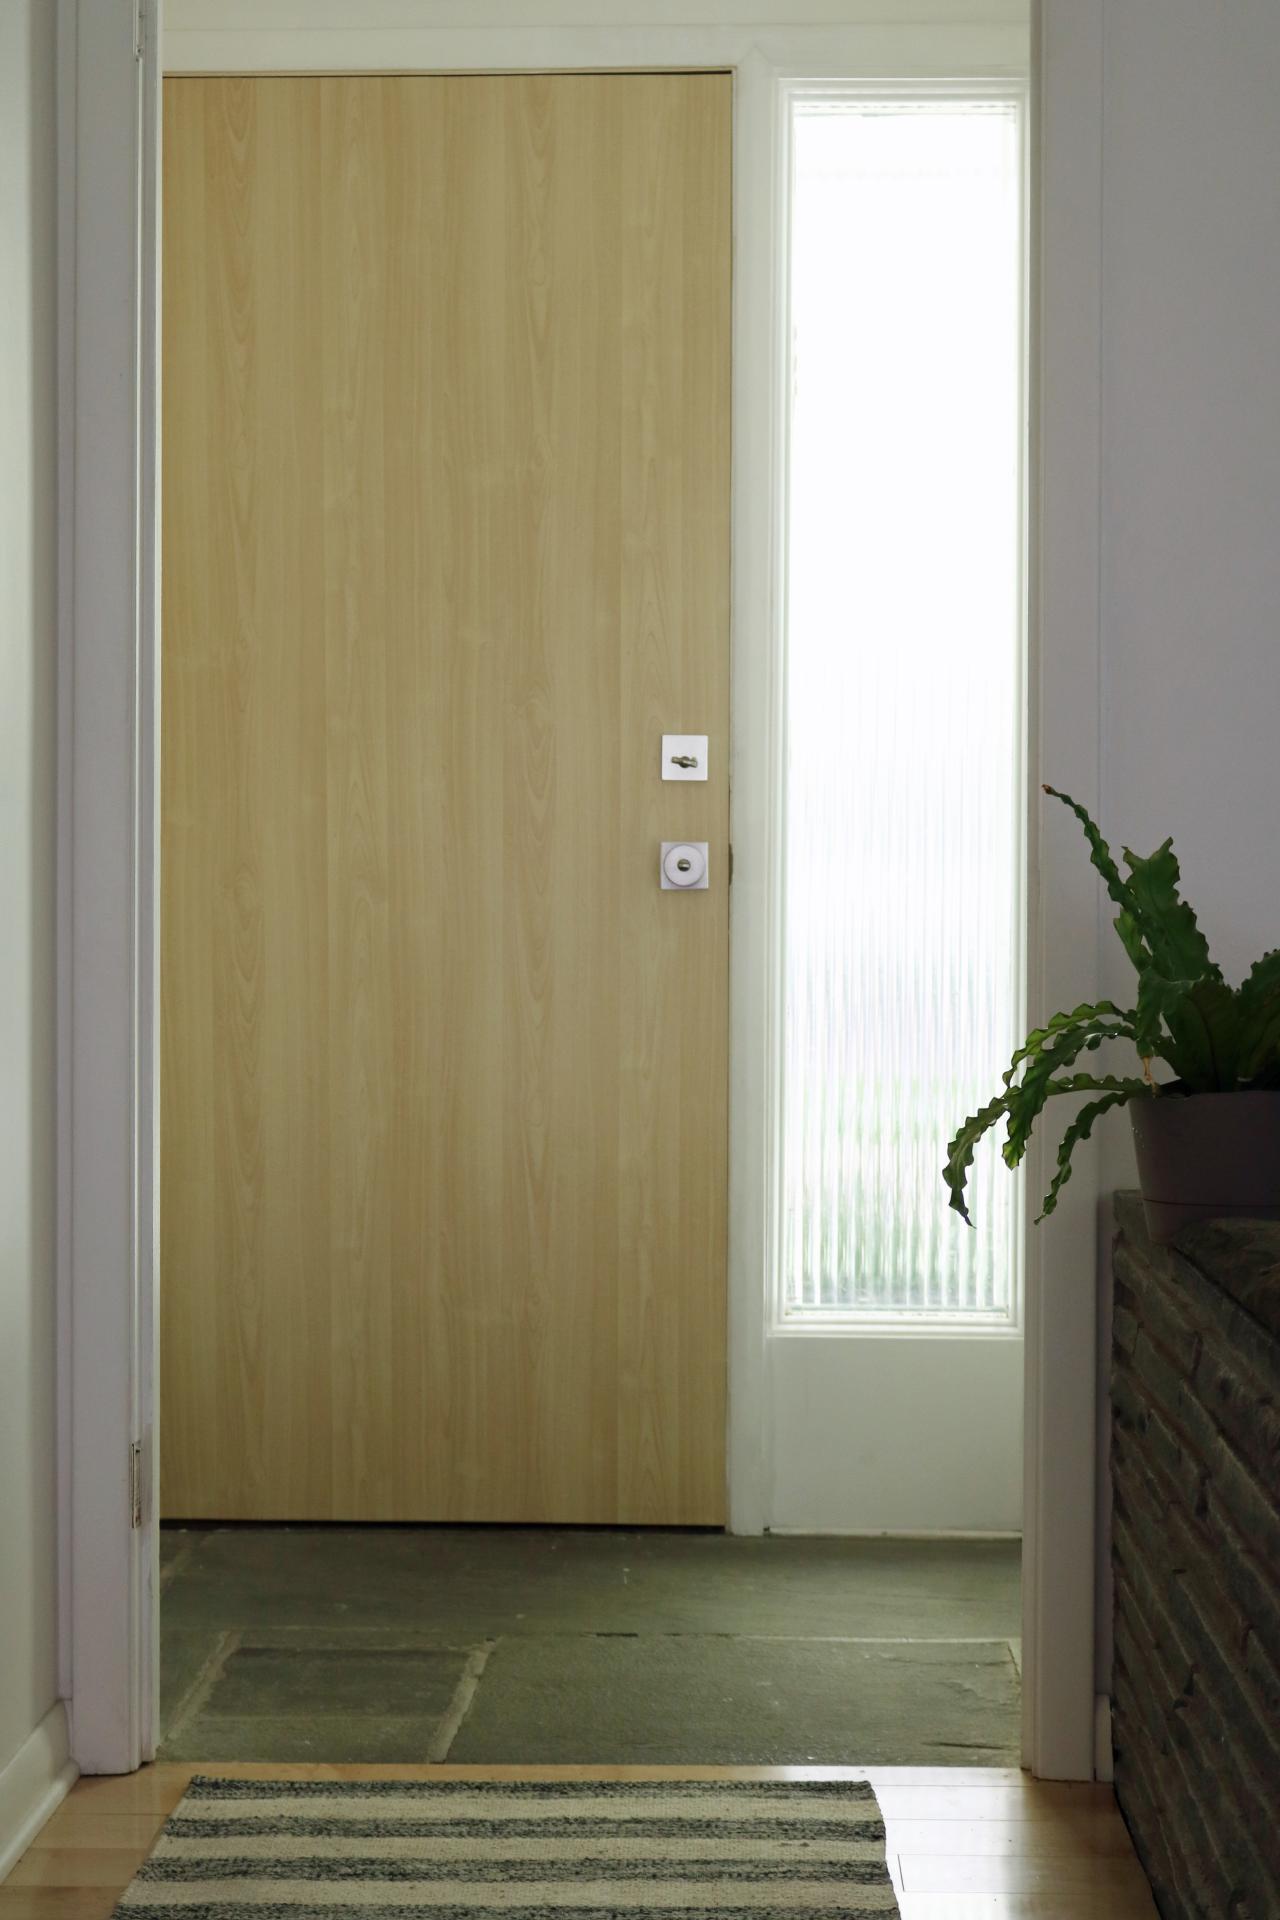 wallpaper on interior doors,door,floor,property,room,home door